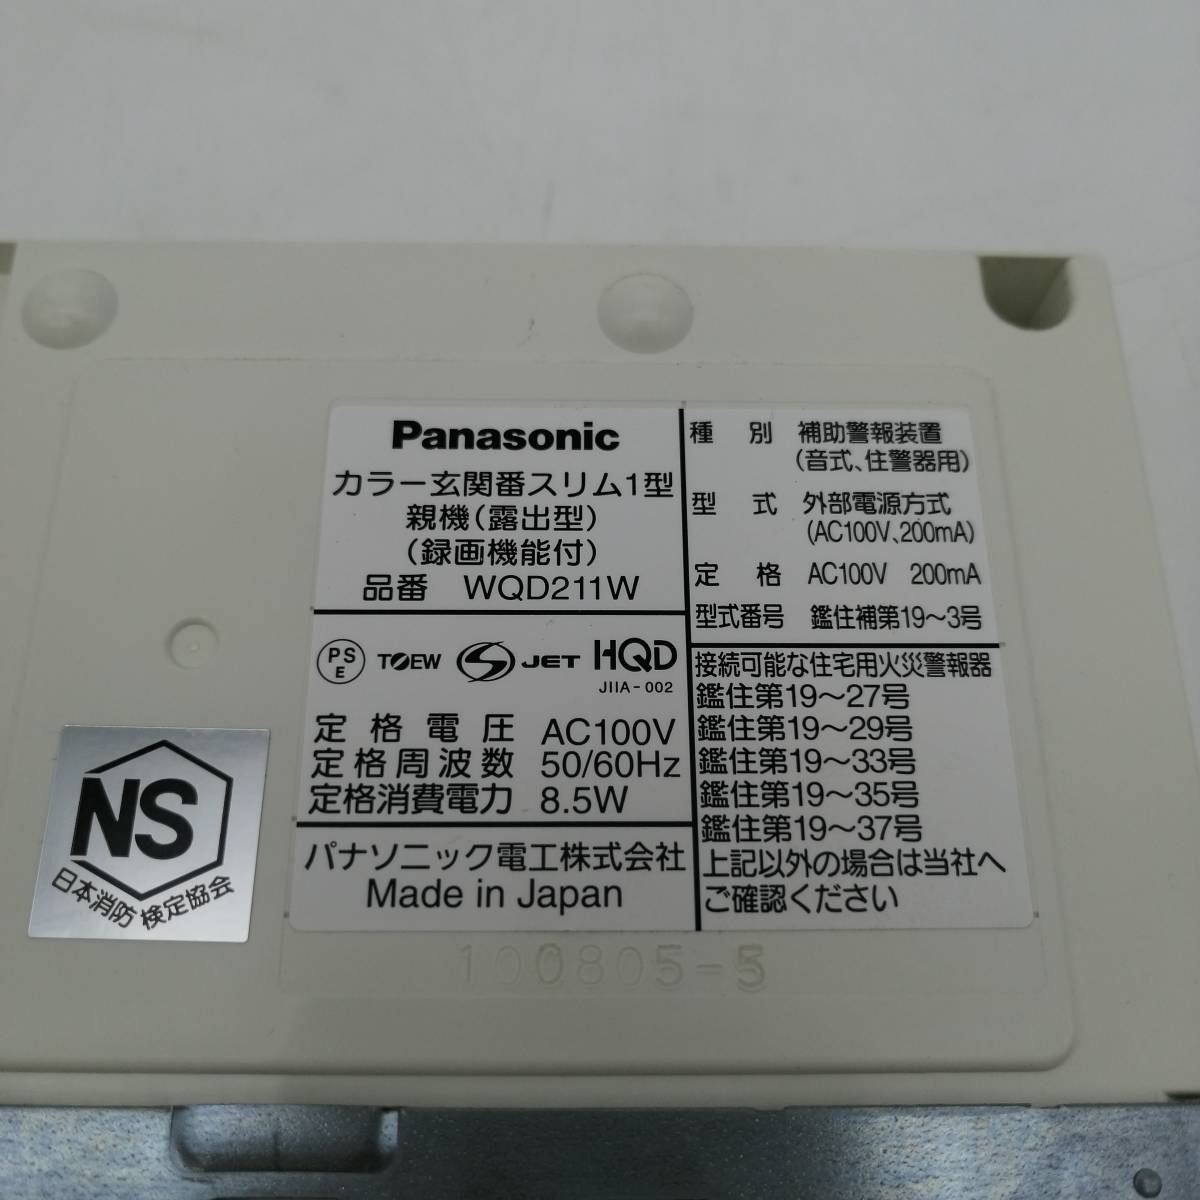 y2473 Panasonic Panasonic телевизор домофон VL-SZ30KL видеозапись функция установка простой модель шнур электропитания тип б/у товар текущее состояние товар изначальный с коробкой подлинная вещь сделано в Японии 